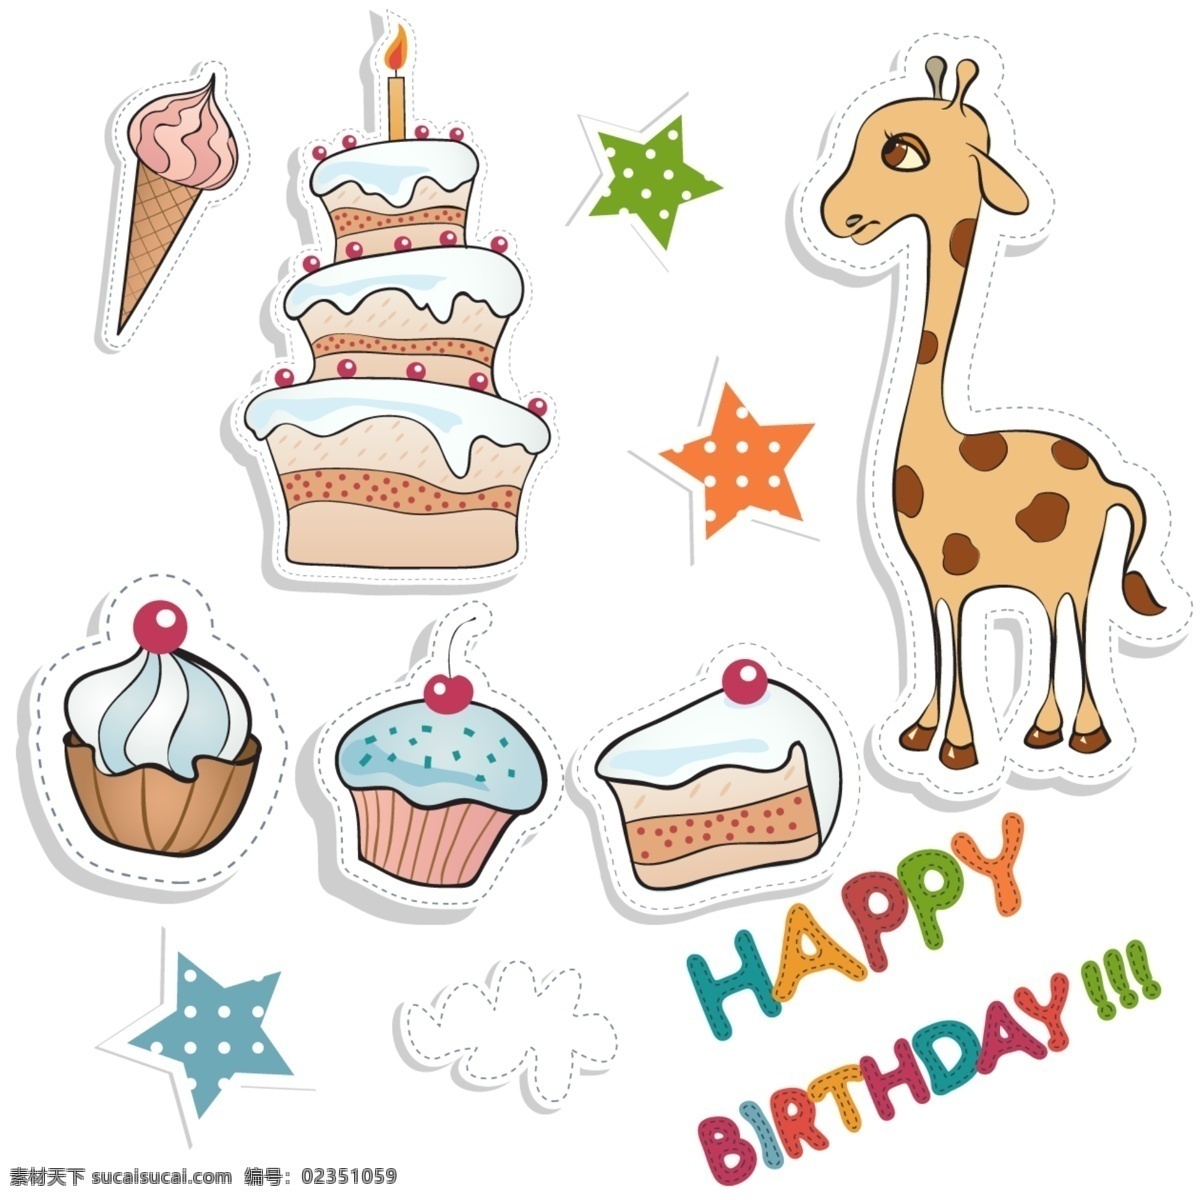 生日素材 长颈鹿 生日蛋糕 小蛋糕 星星 蛋筒 happy birthday 过生日 生活百科 生活用品 白色